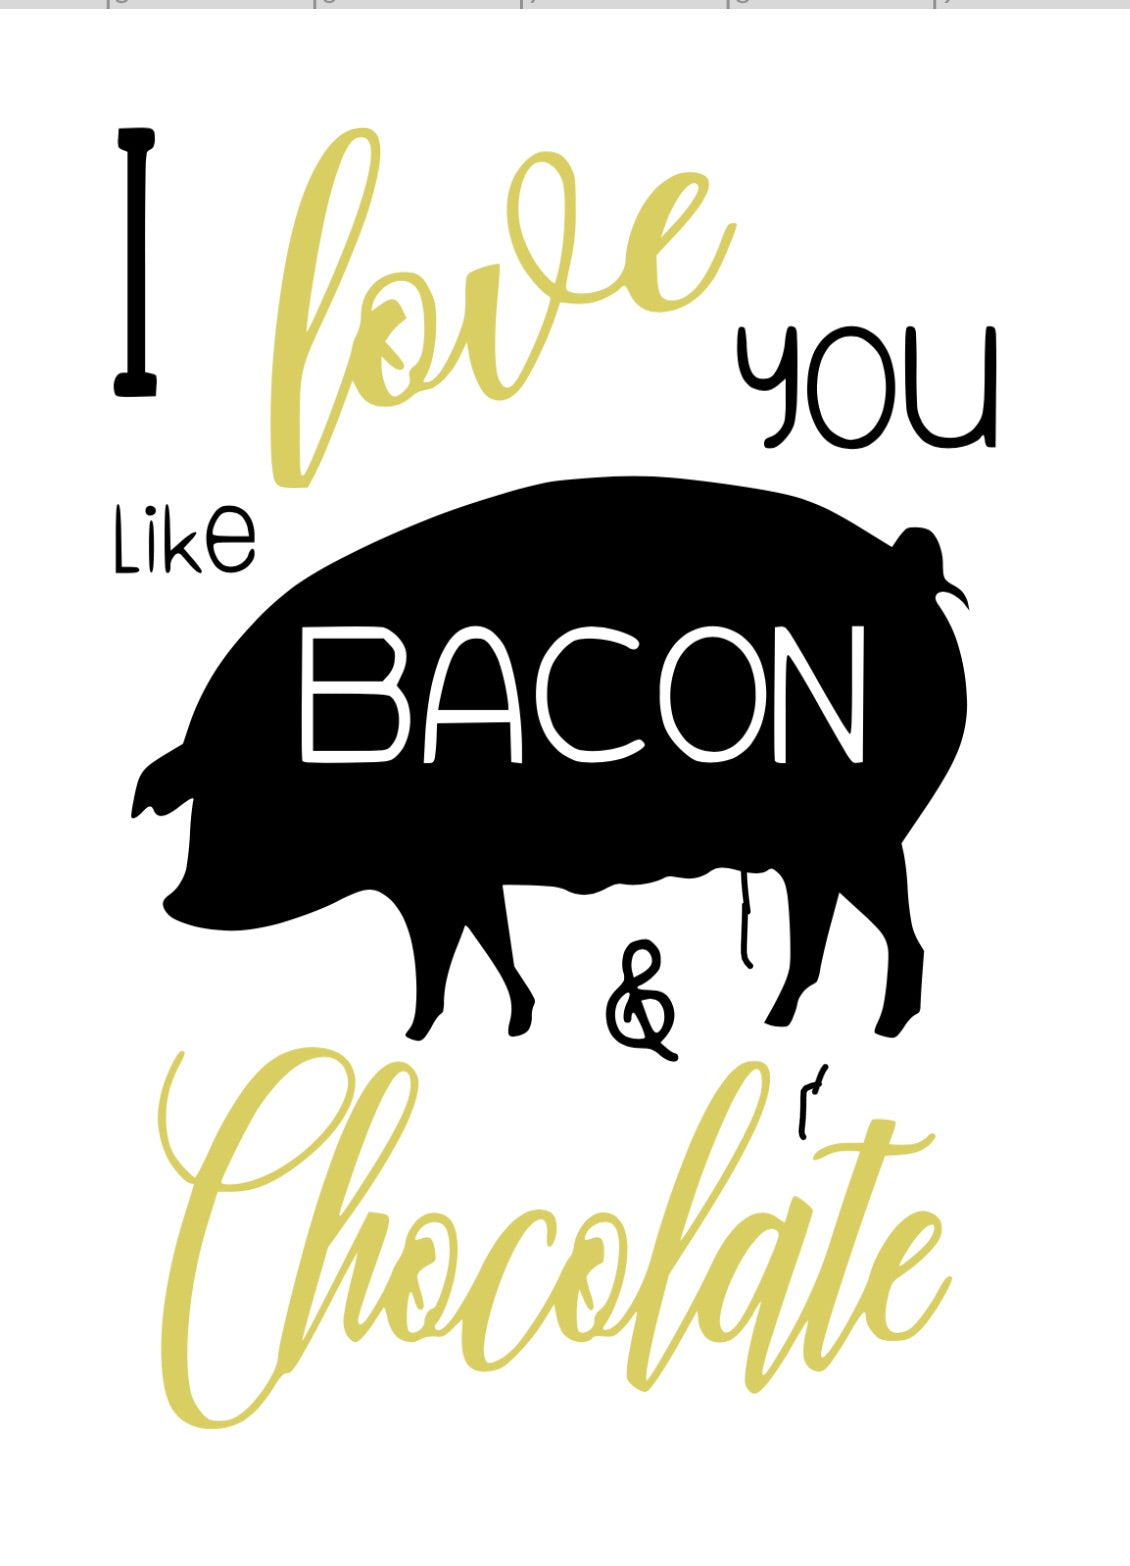 I love you like Bacon and Chocolate